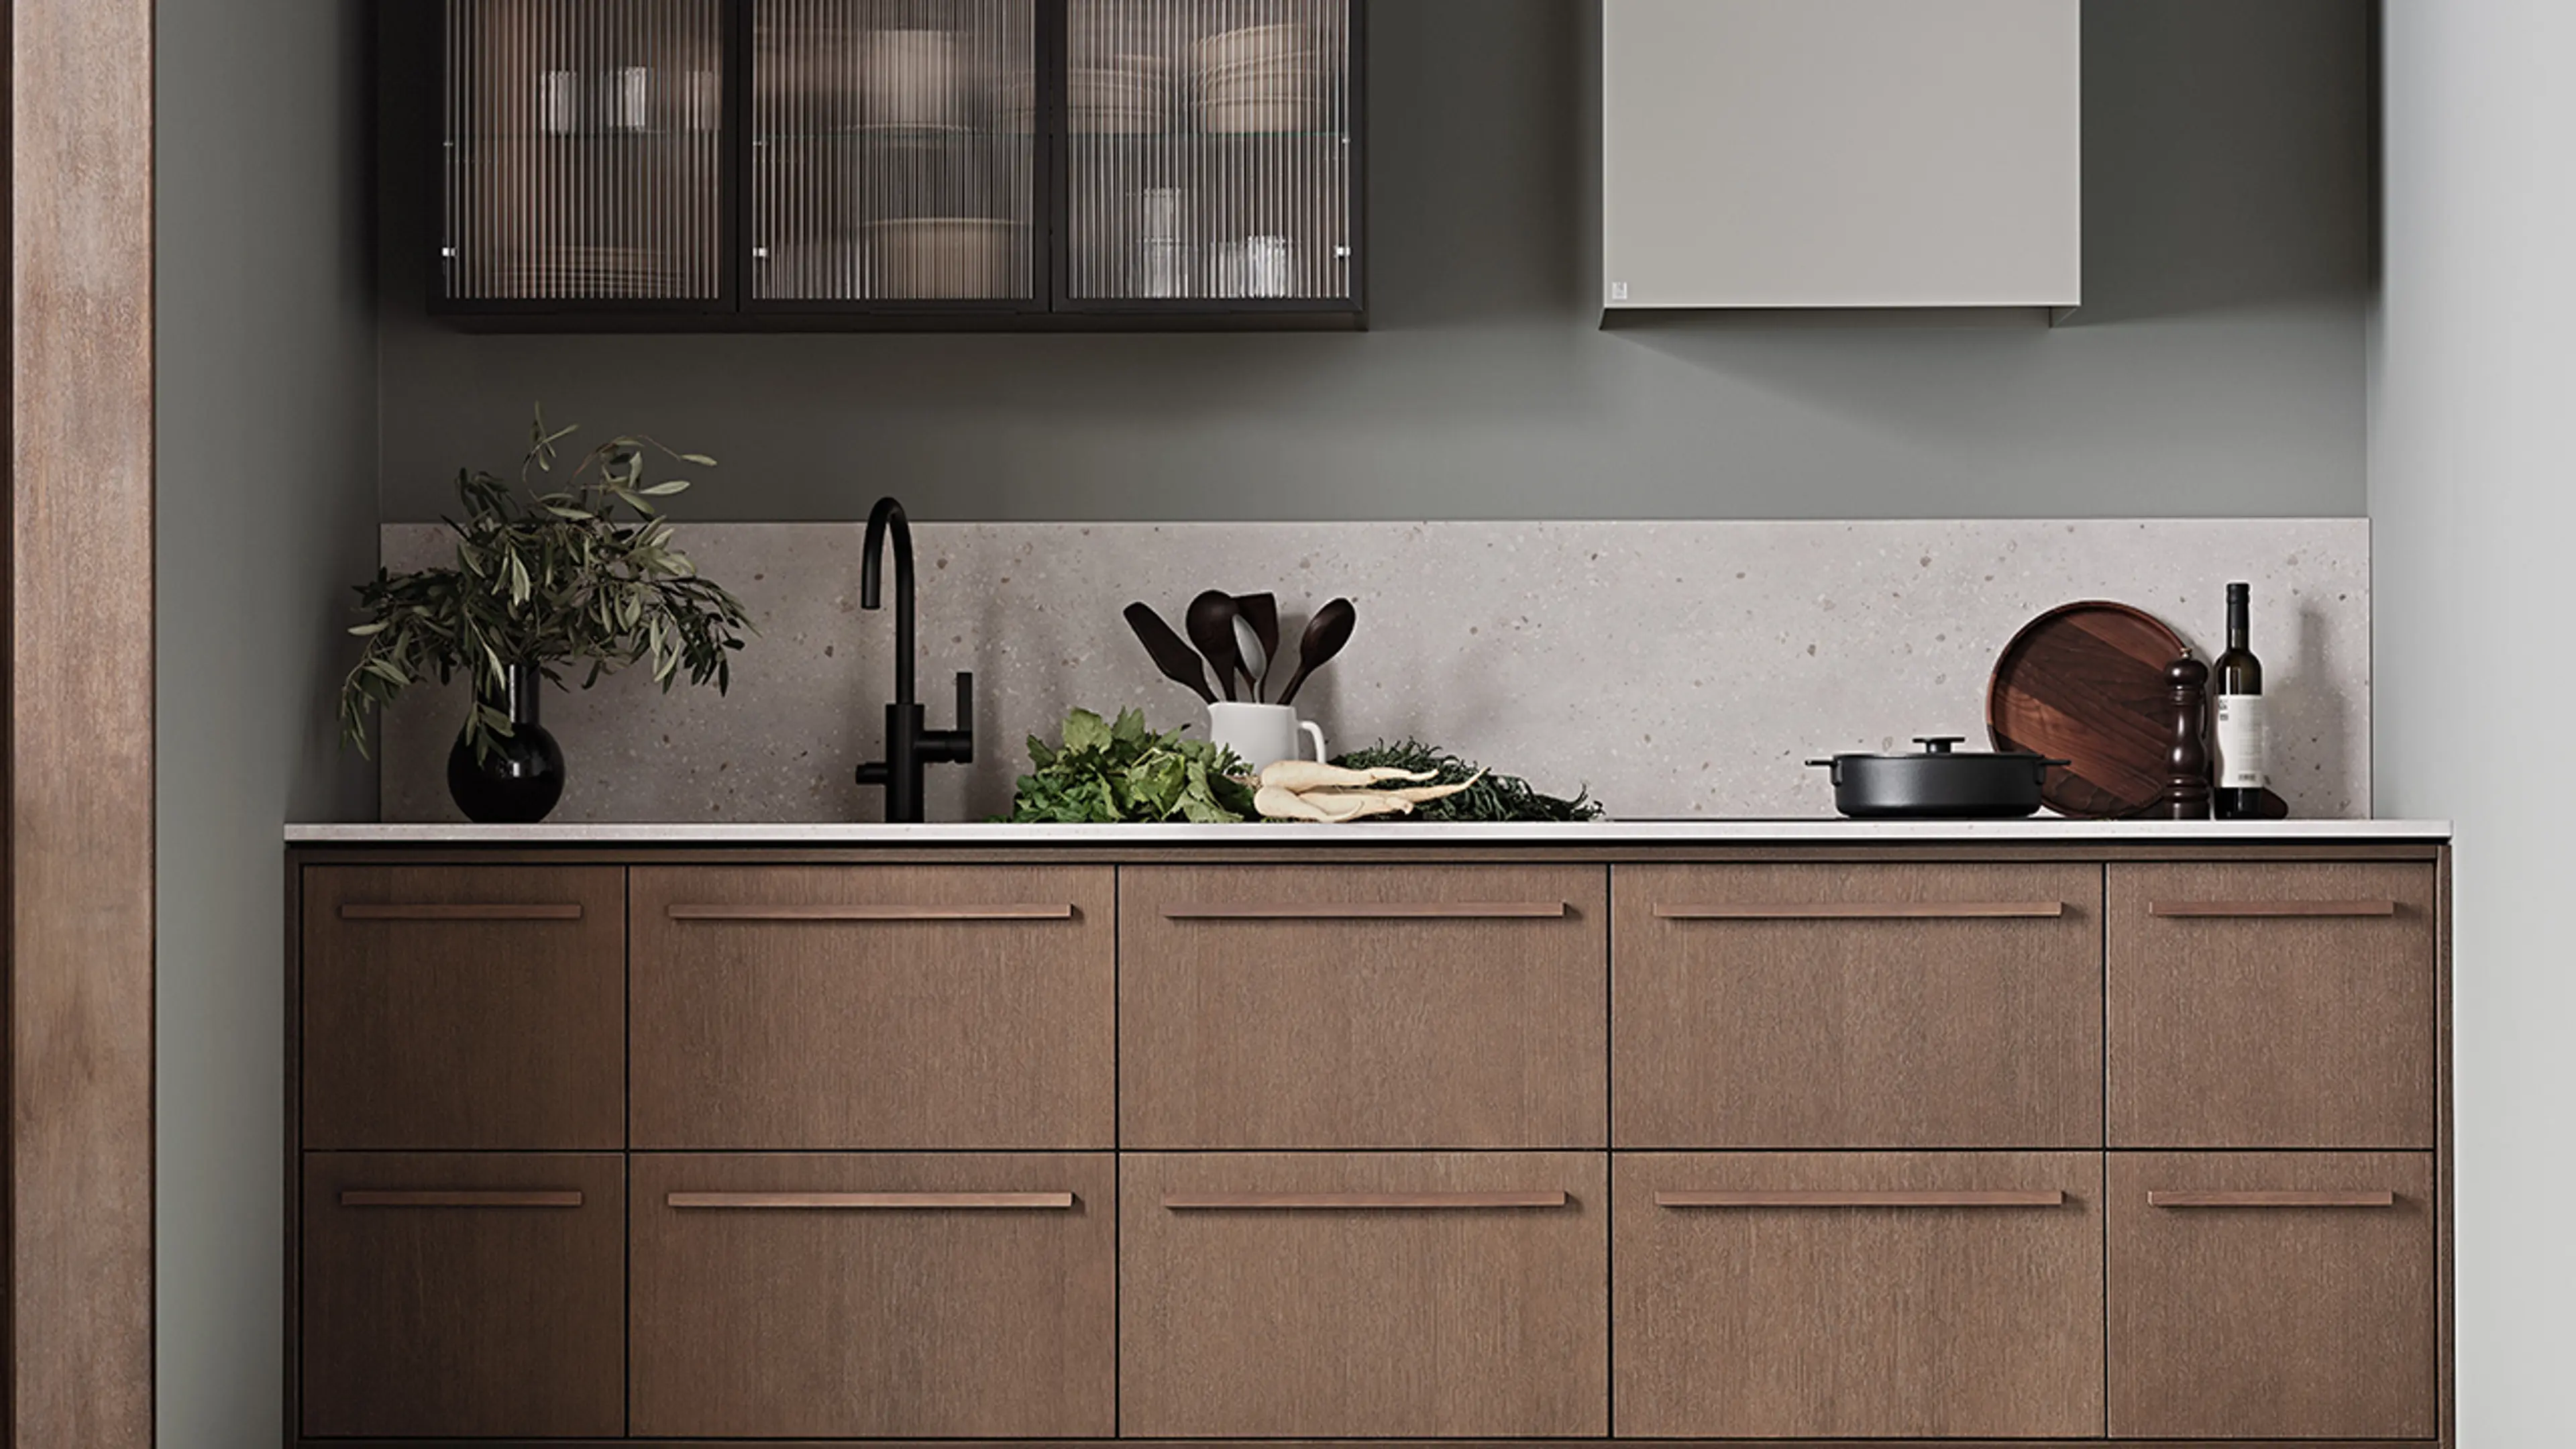 Lite kjøkken i treverk med kjøkkenhette og overskap med glassfronter.